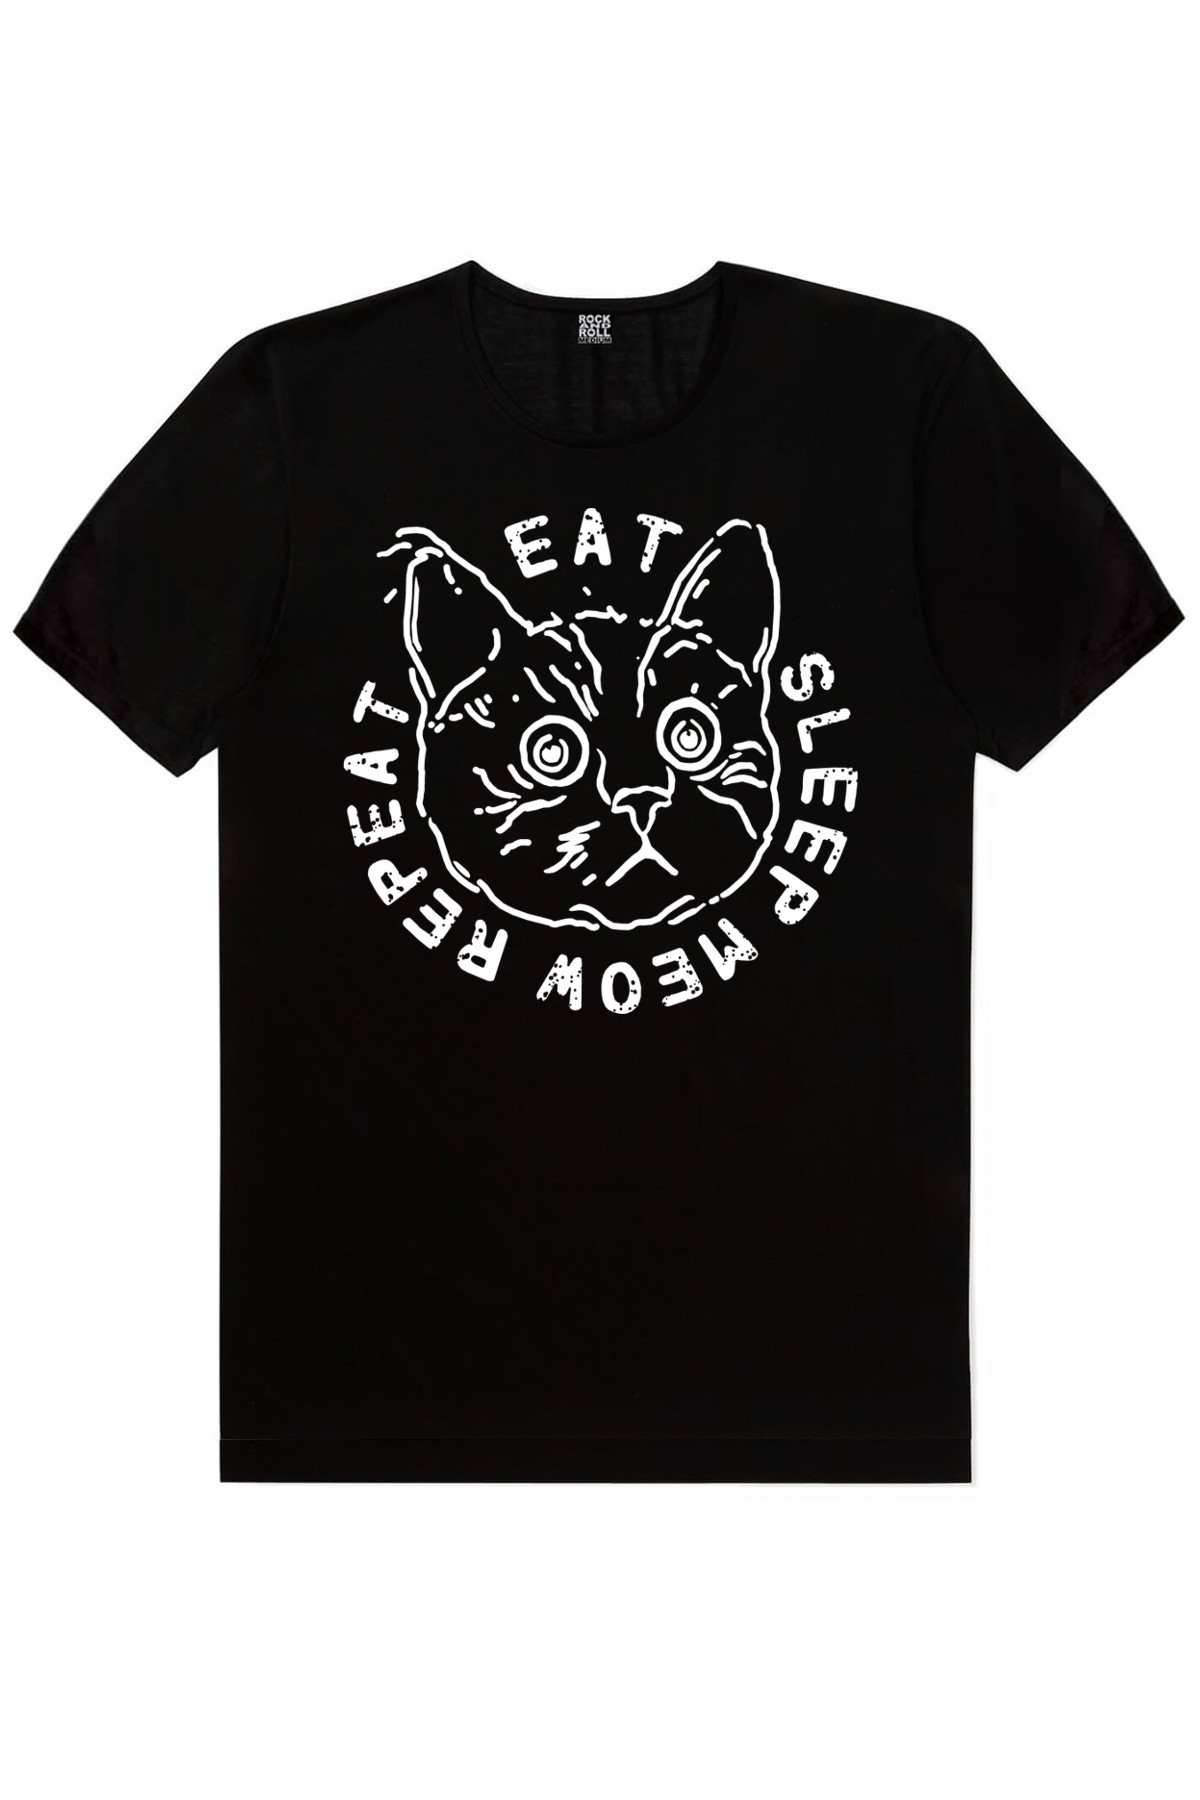 Şaşkın Kedi Siyah, Kasklı Kedi Erkek Tişört 2'li Eko Paket